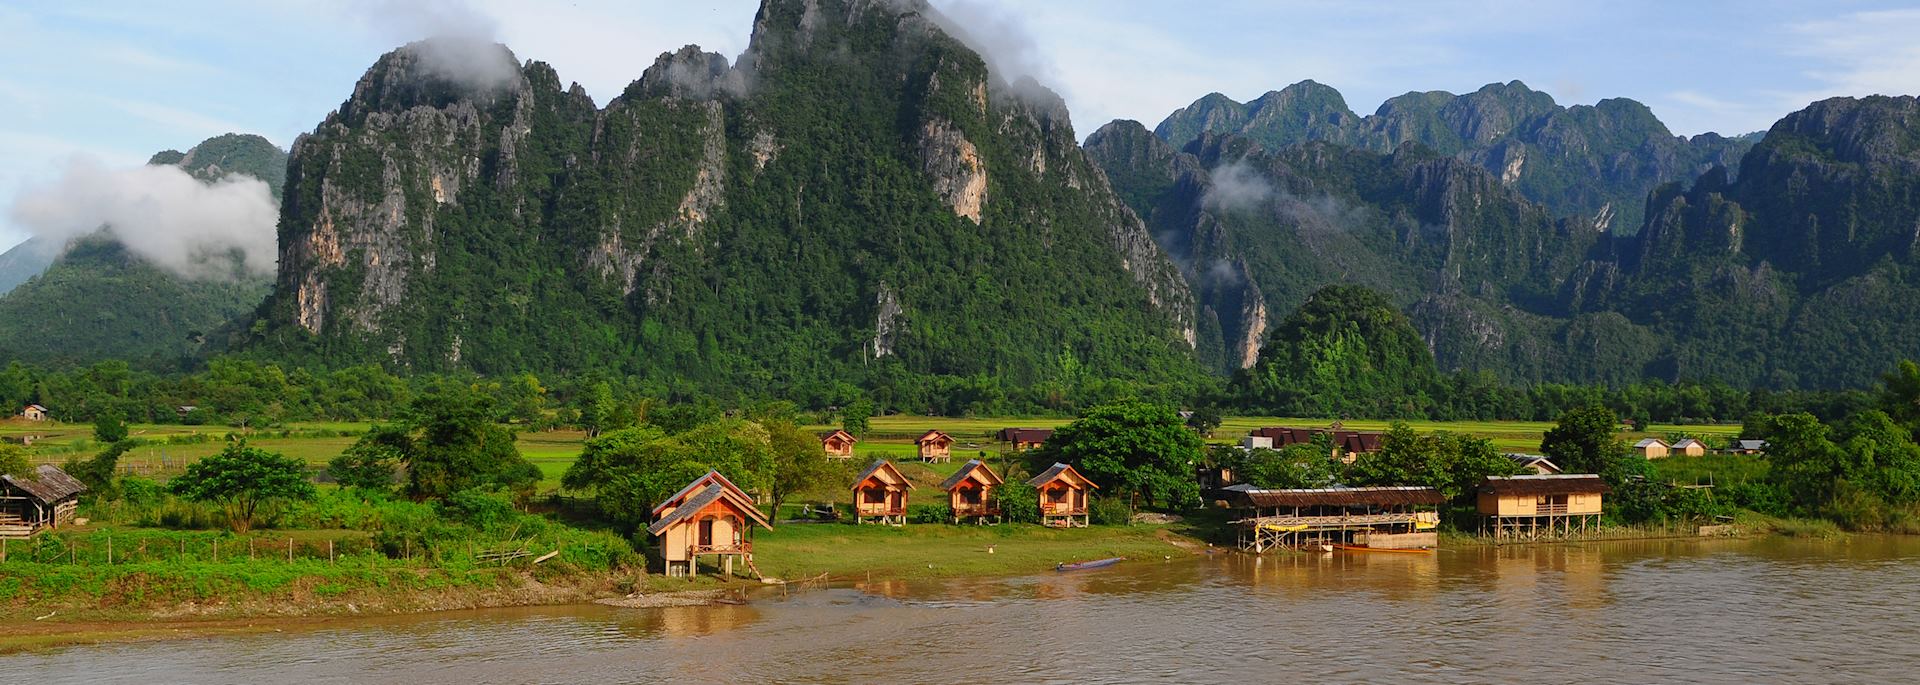 The sleepy riverside town of Vang Vieng